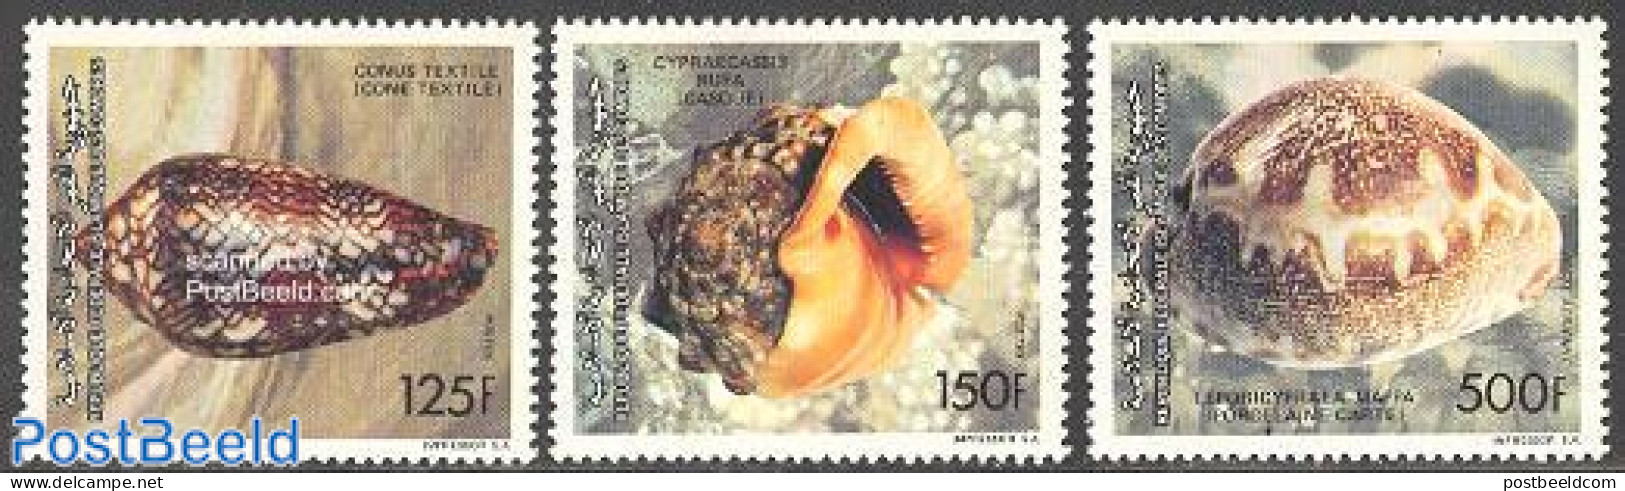 Comoros 1992 Shells 3v, Mint NH, Nature - Shells & Crustaceans - Maritiem Leven